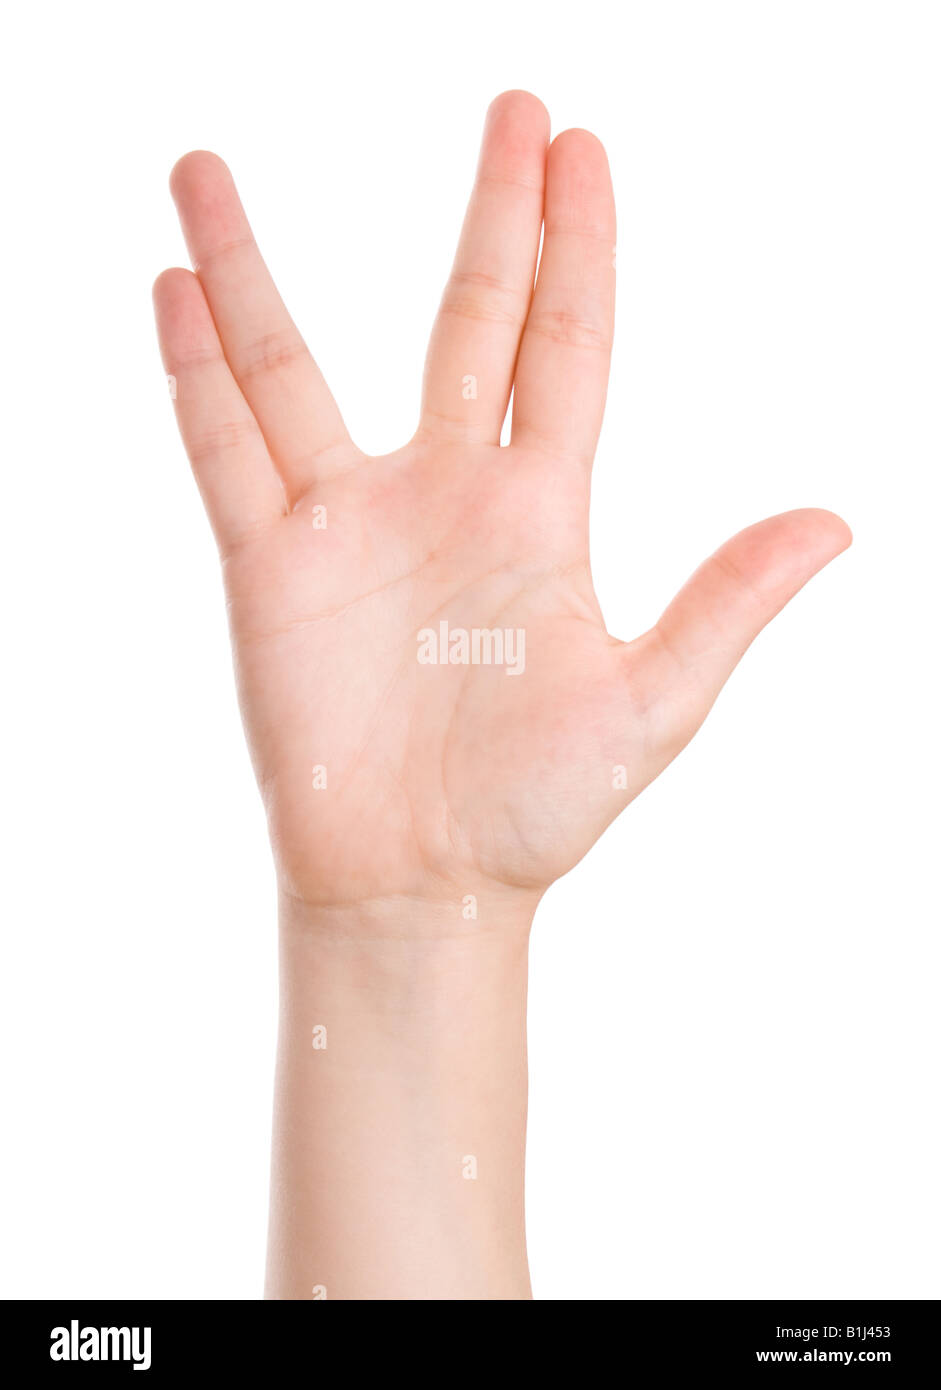 Geste de la main pour le salut Vulcain - M. Spock célèbre geste de la série Star Trek Banque D'Images